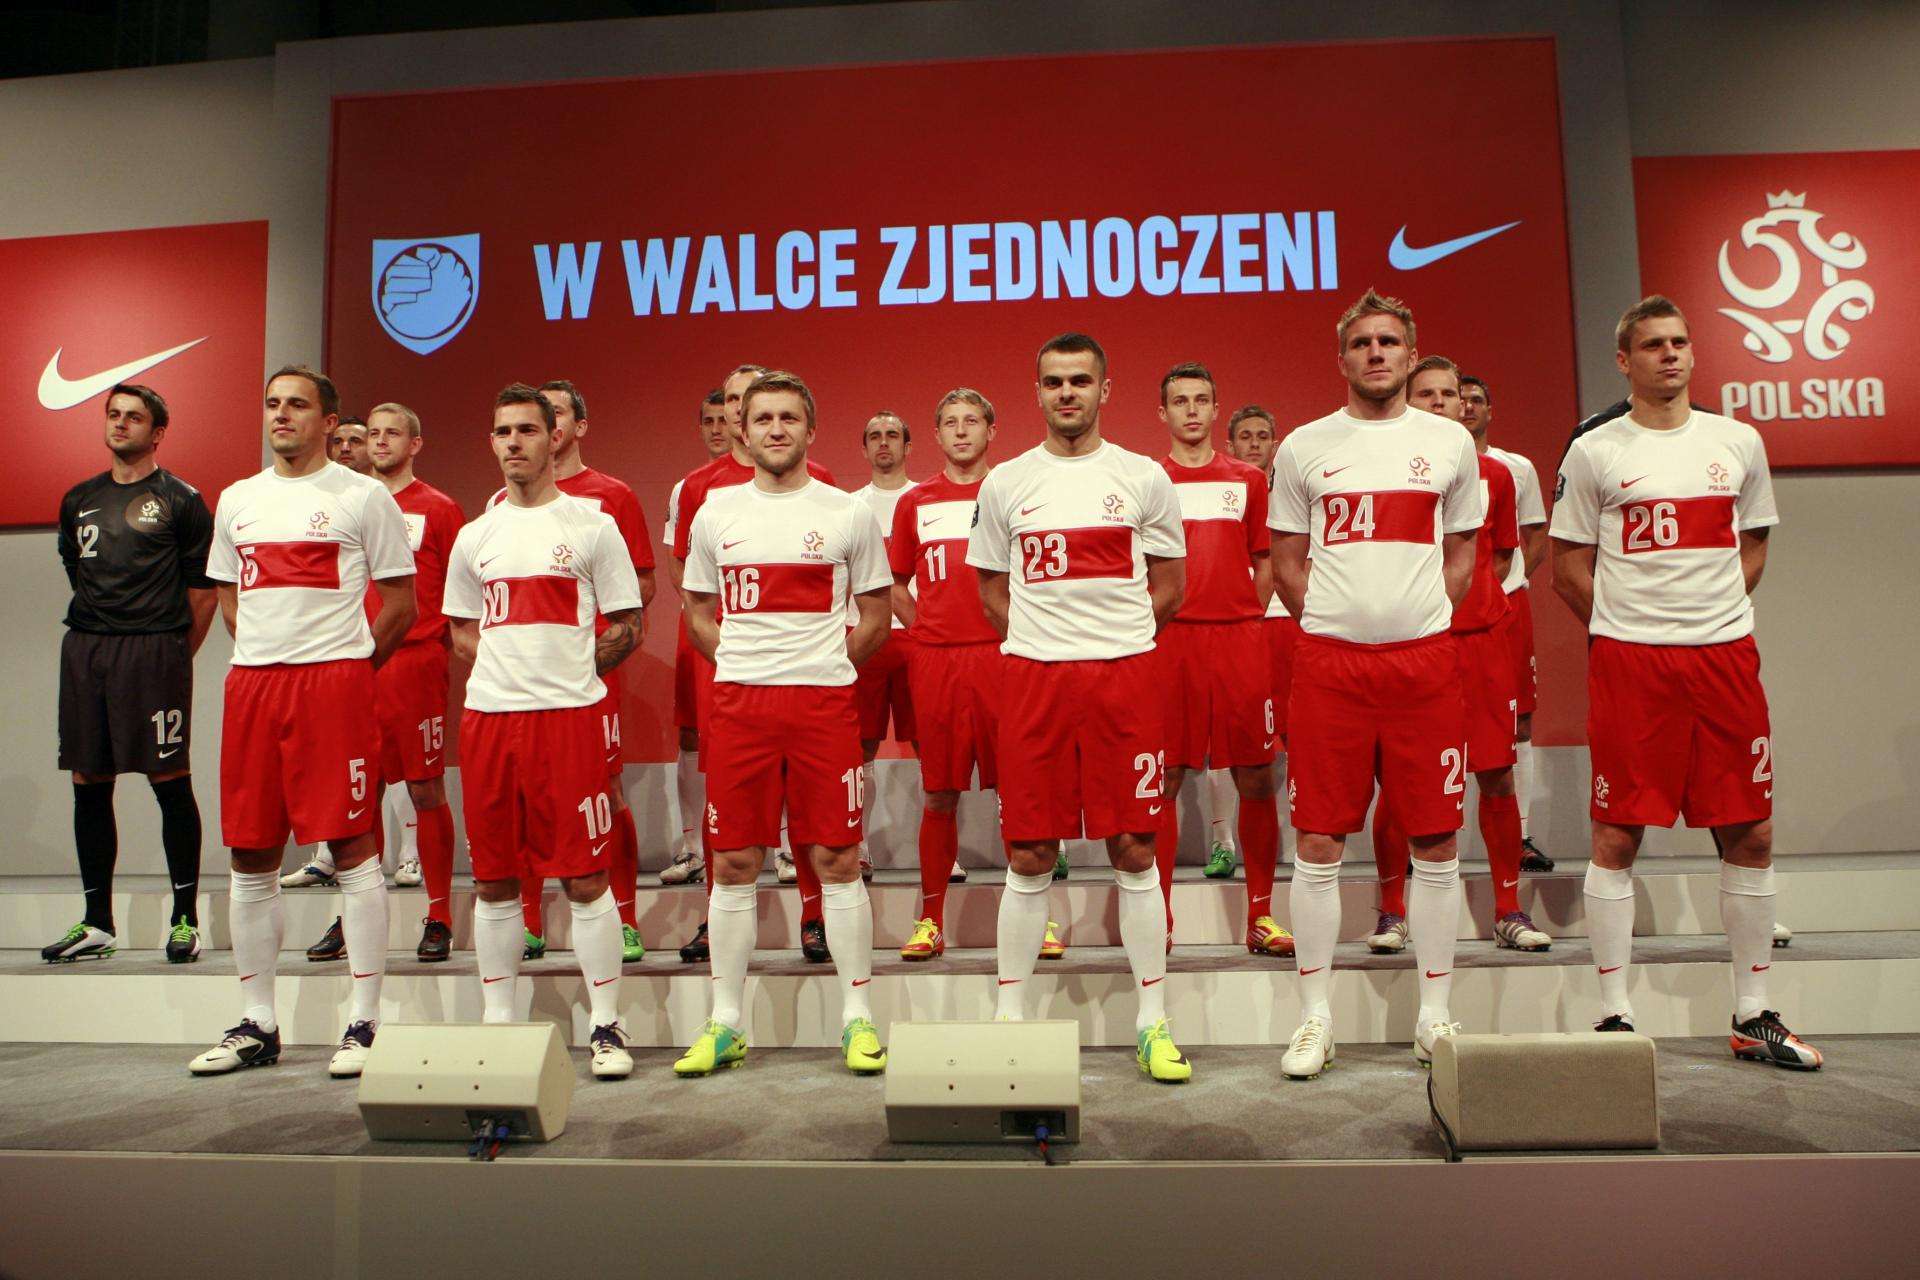 Prezentacja nowych strojów reprezentacji Polski z 2011 roku (koszulki bez orzełka).